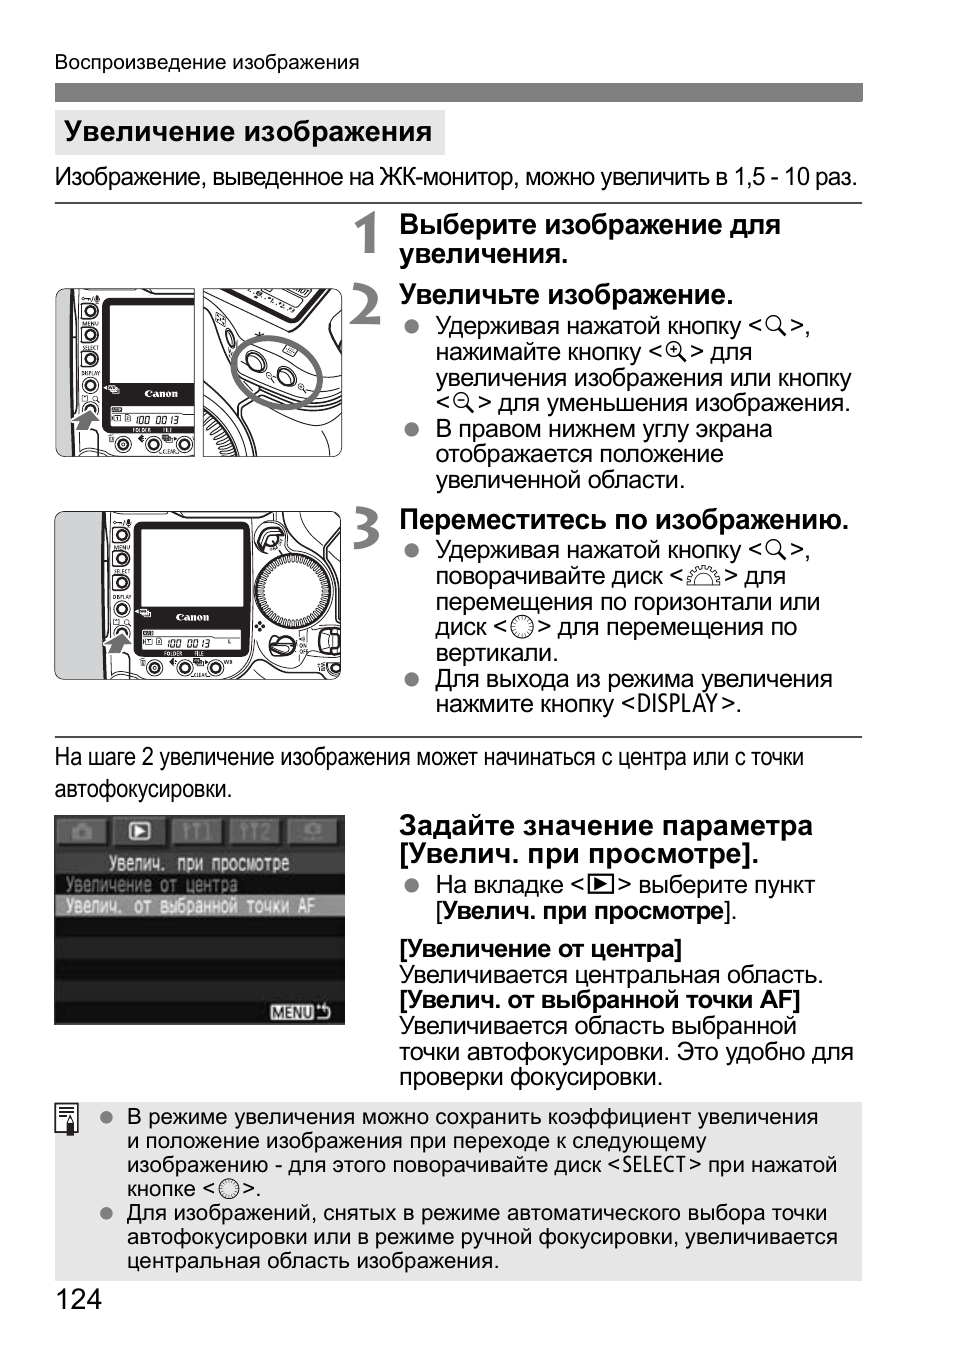 Инструкция по эксплуатации Canon EOS 1D Mark II N | Страница 124 / 196